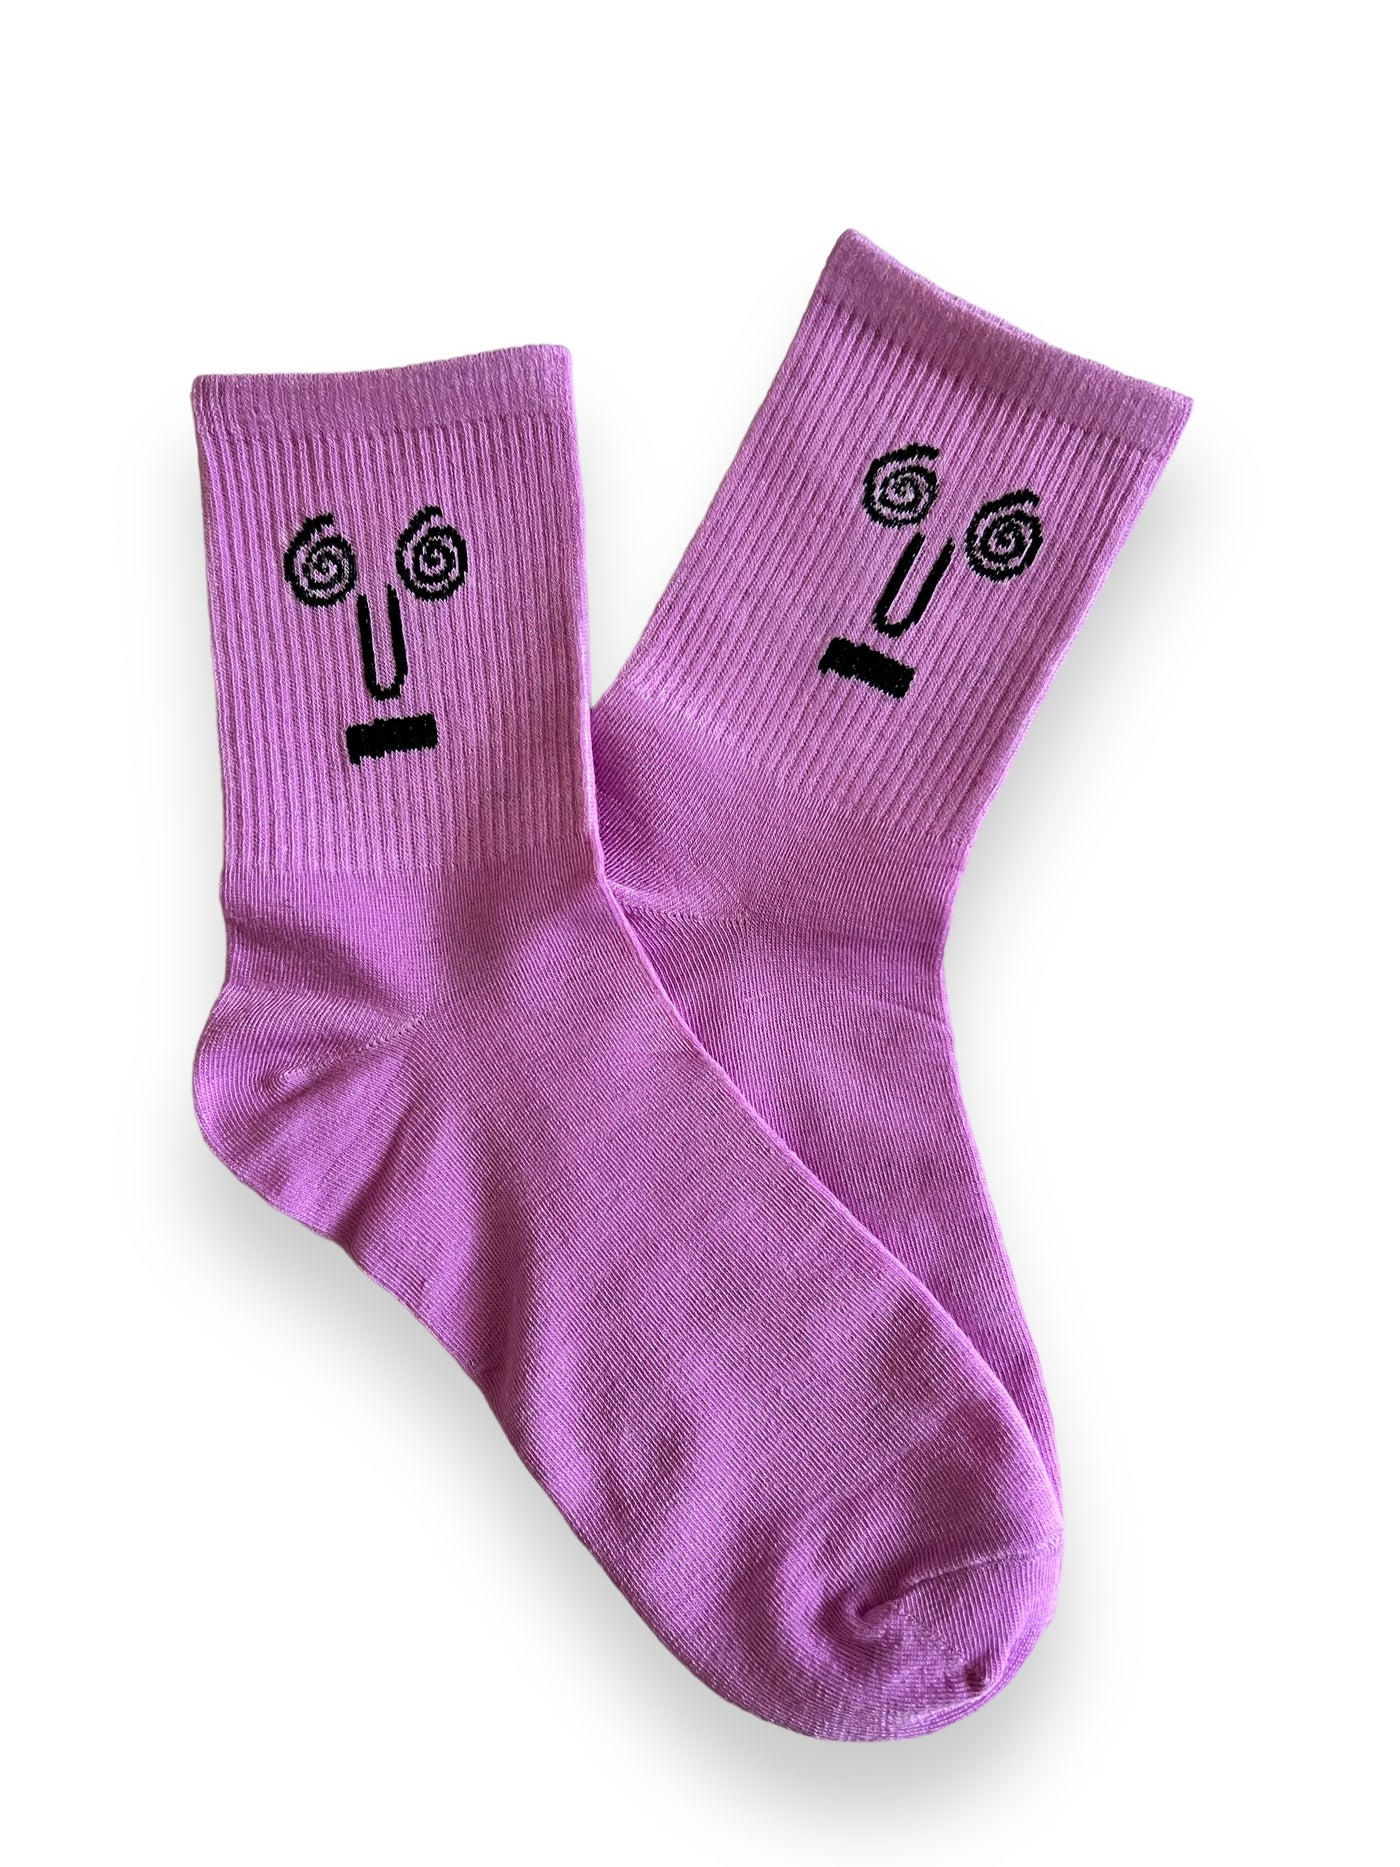 5pcs Mood Socks Set